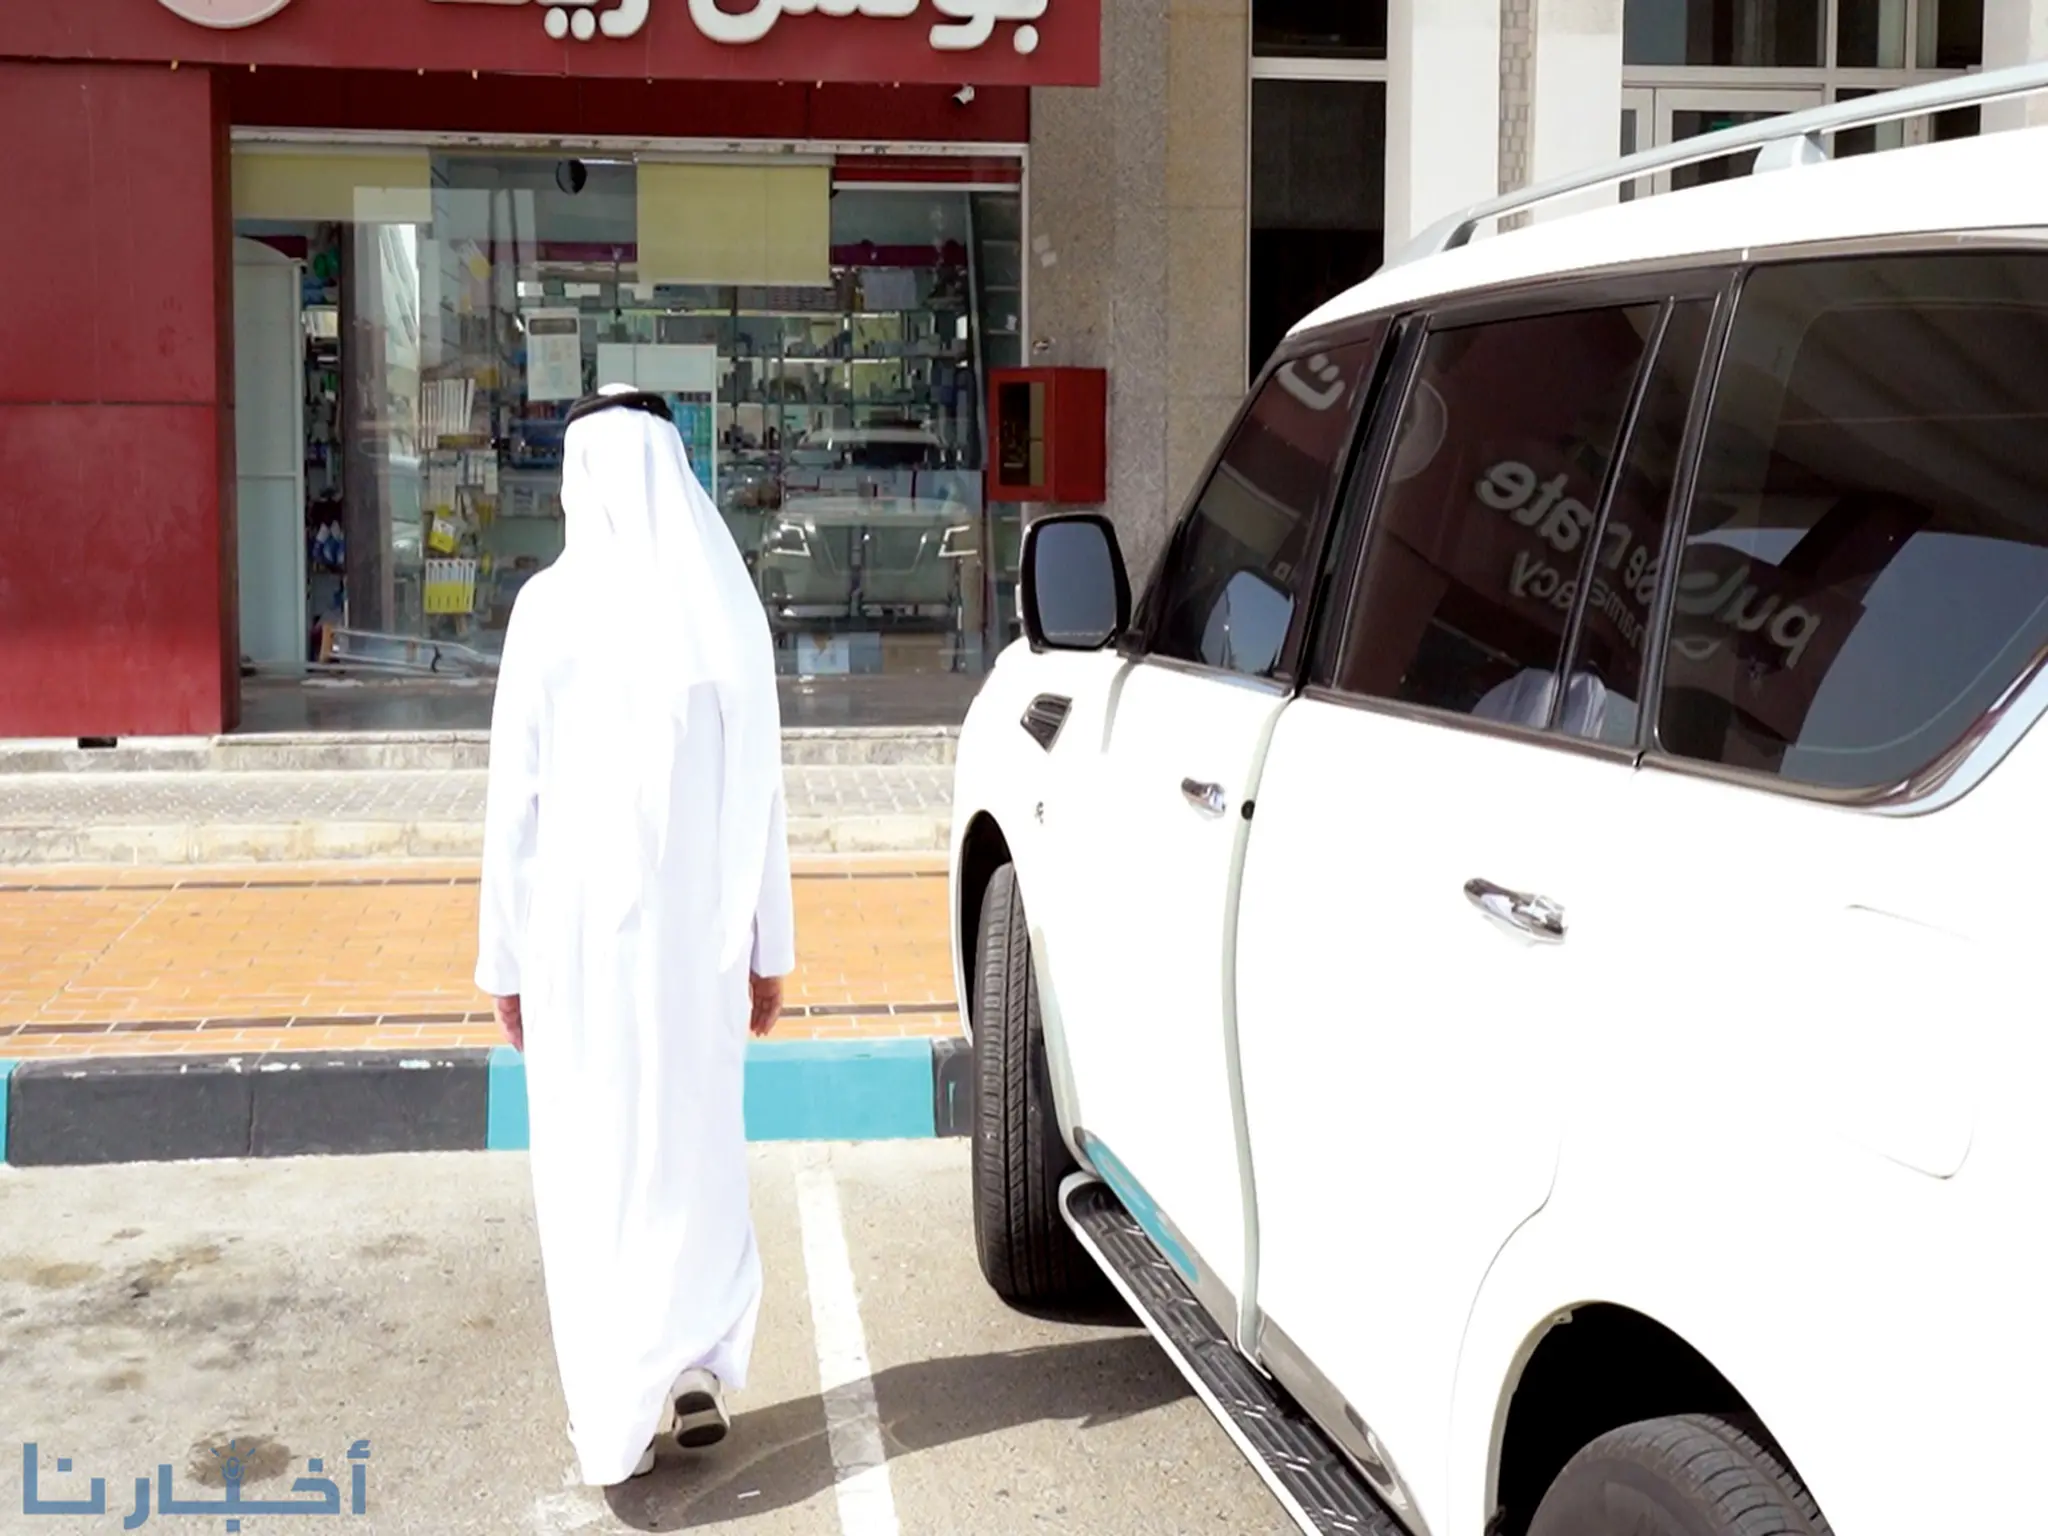 شرطة أبوظبي تصدر تحذيراً بشأن ترك السيارة في حالة تشغيل